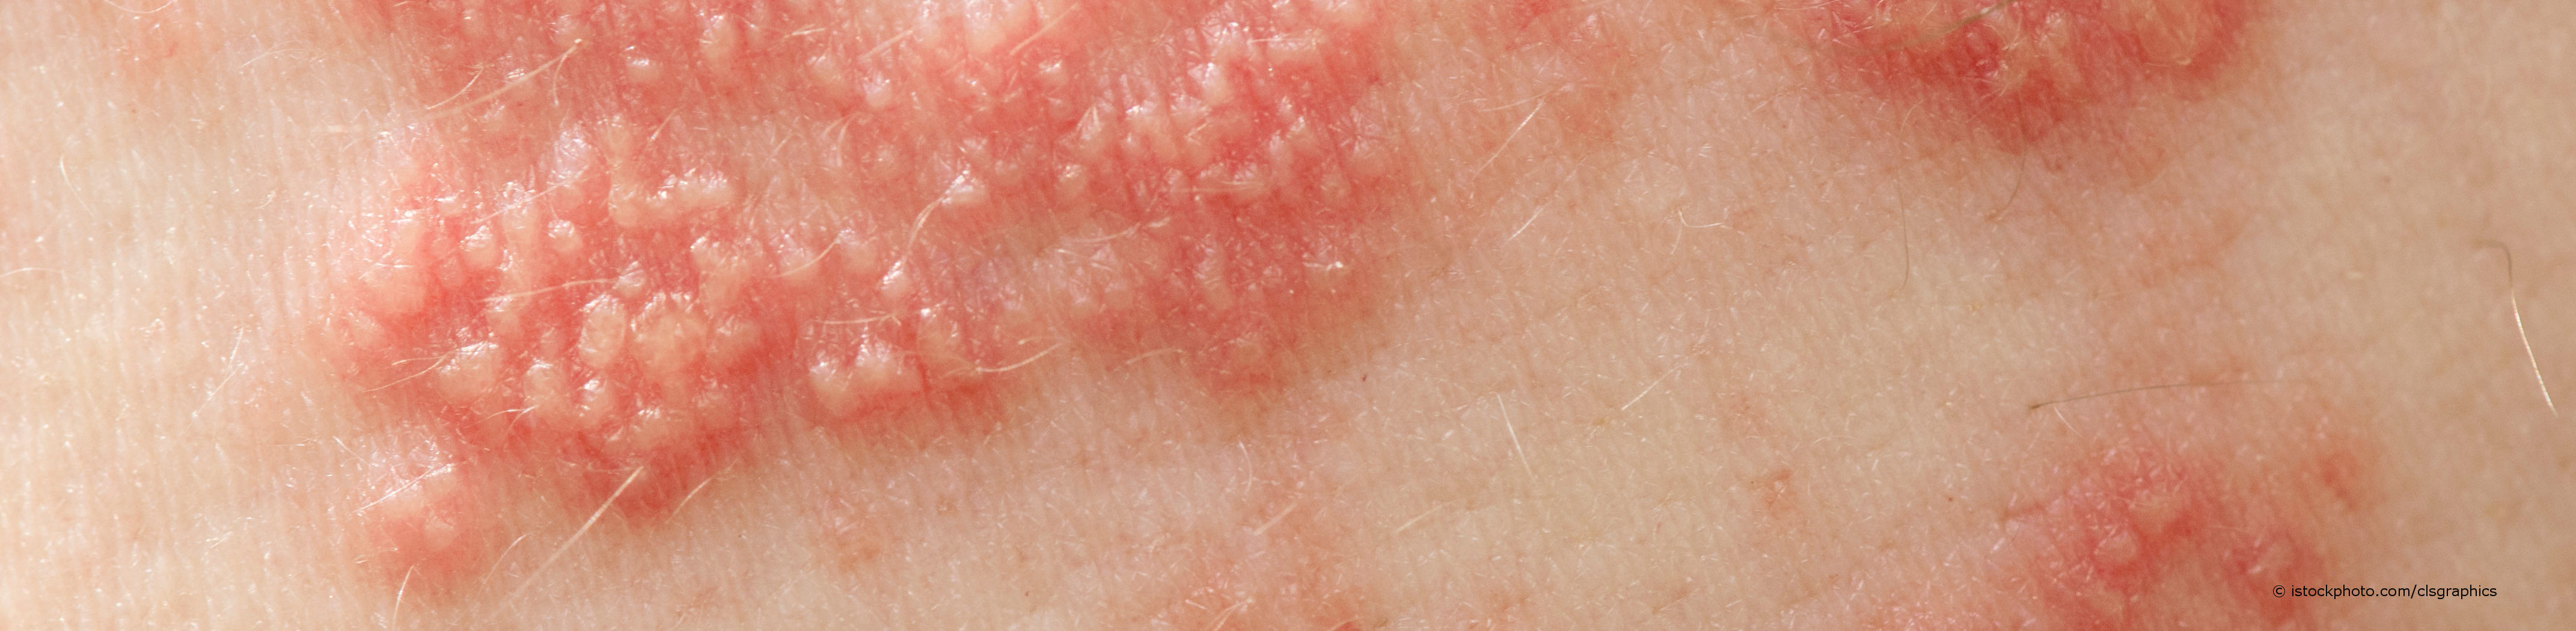 Gürtelrose (Herpes zoster) ist ein halbseitiger, gürtelähnlicher, stark schmerzender Hautausschlag.